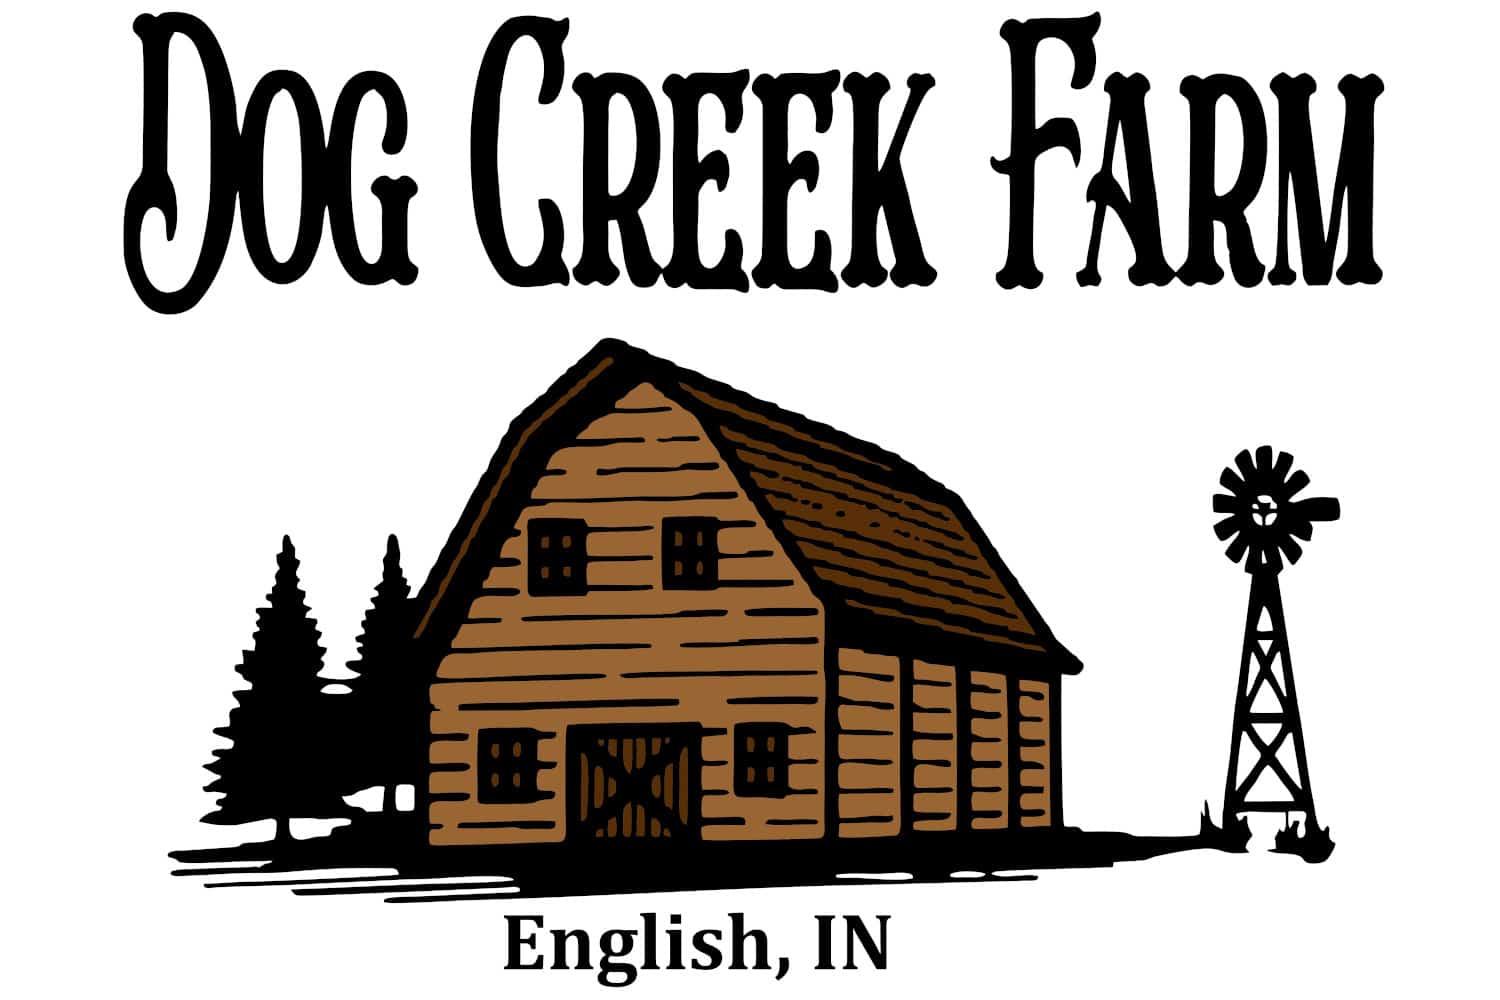 Dog Creek Farm